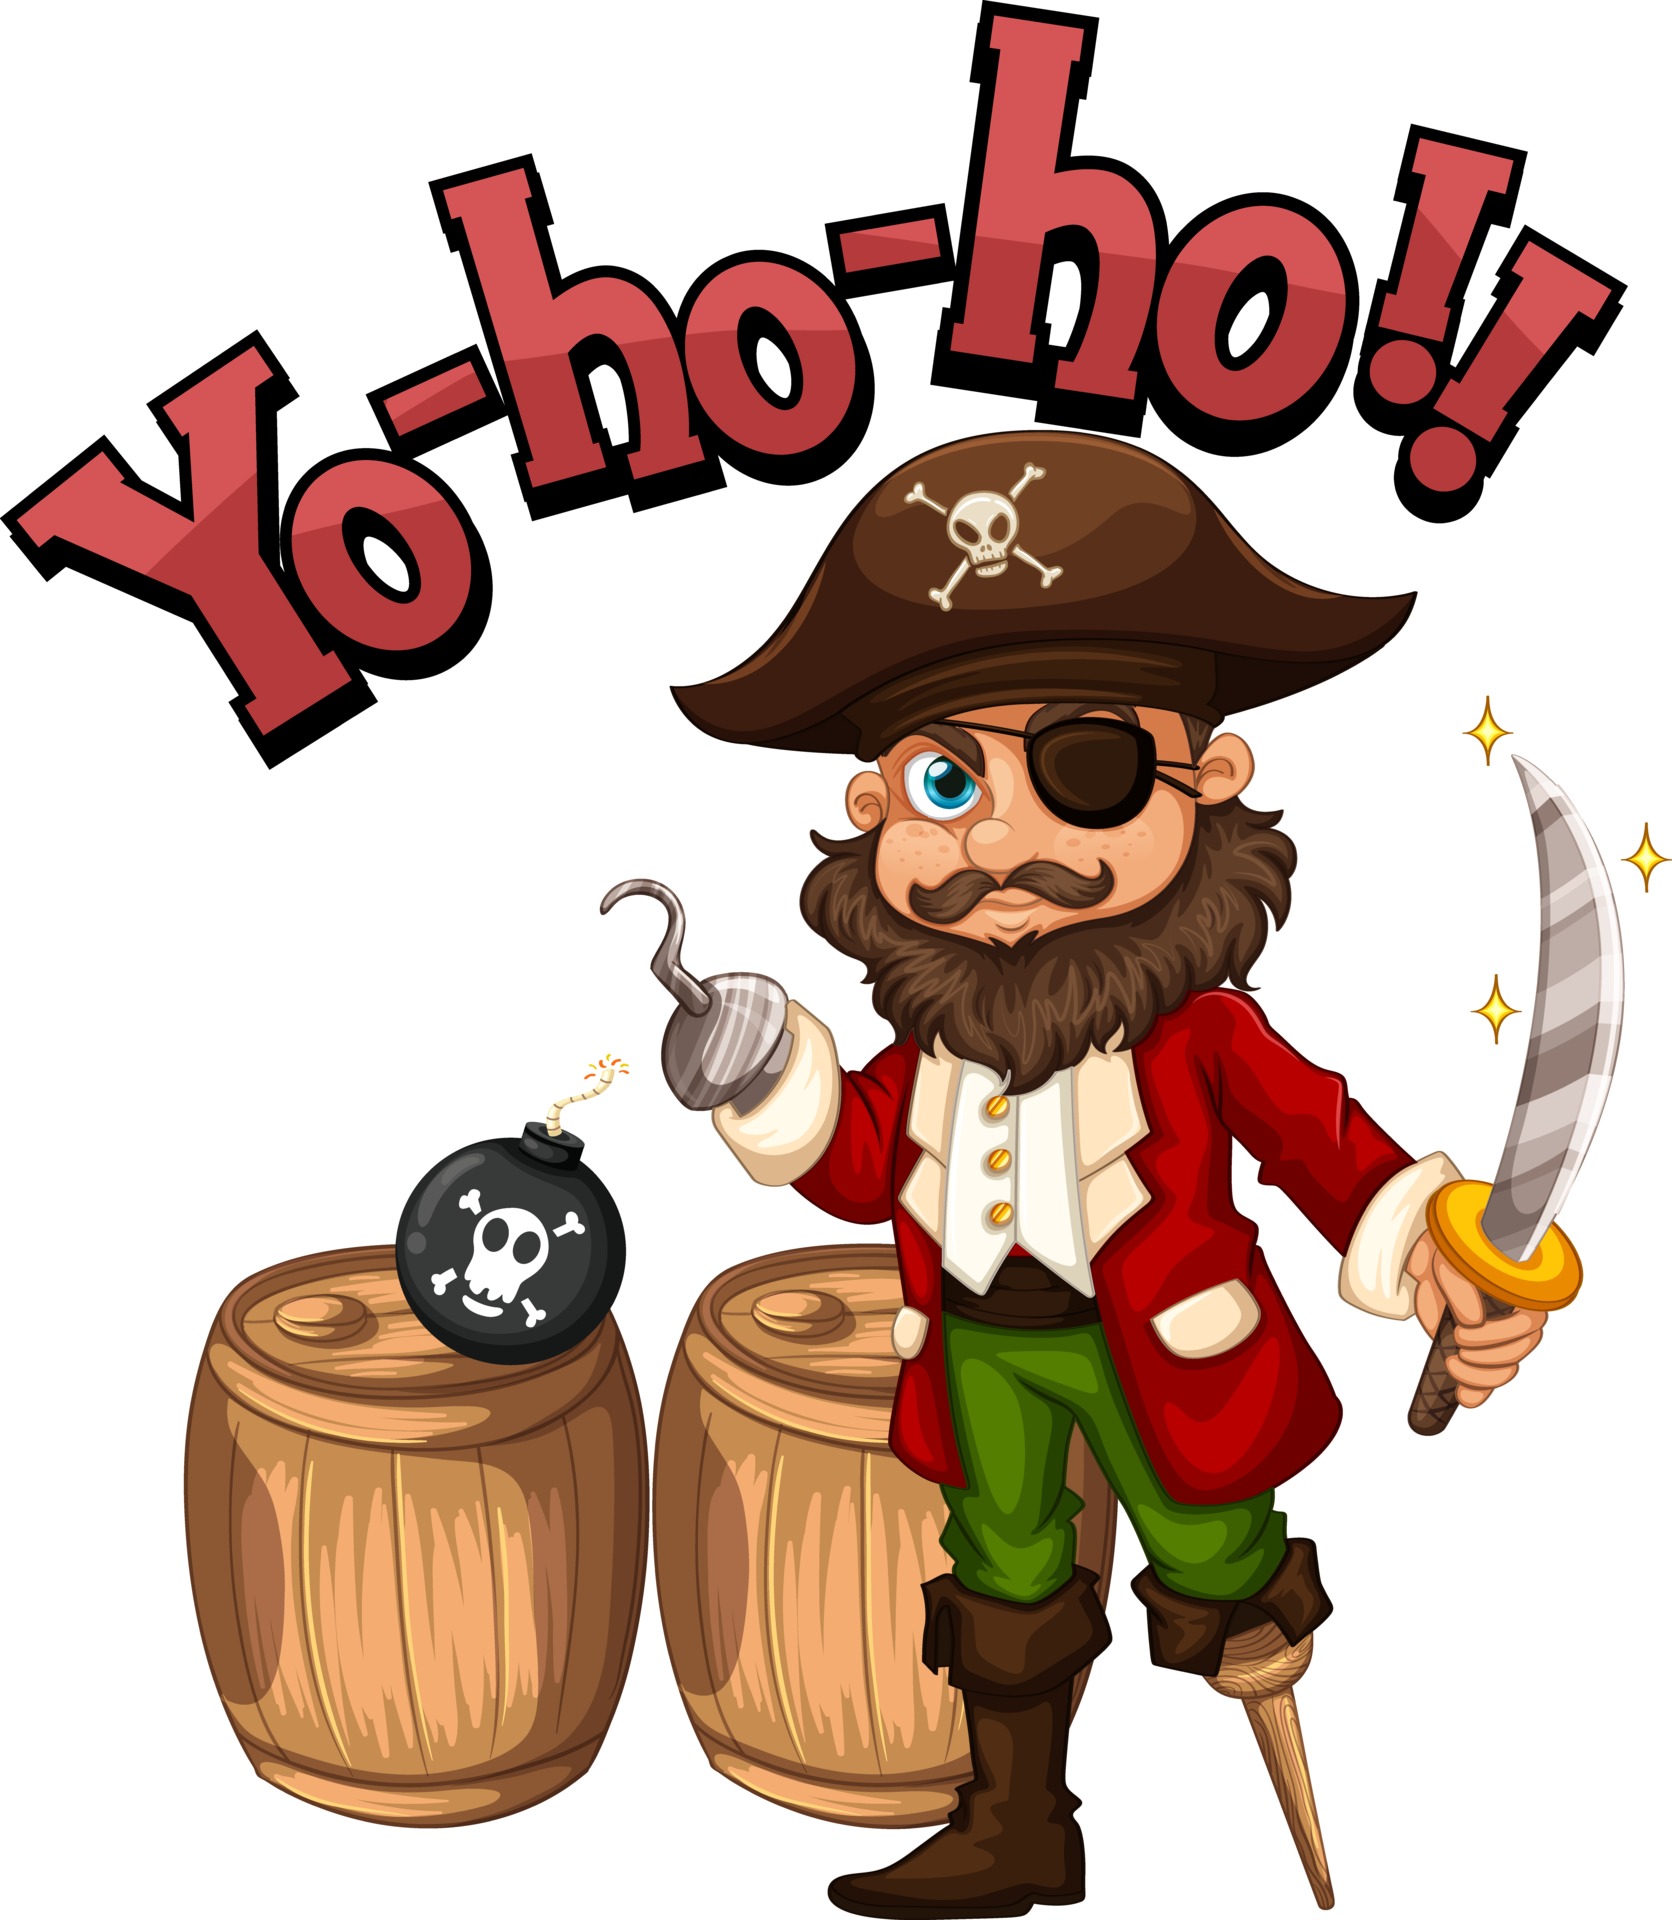 Captain Hook cartoon character with Yo-ho-ho speech 2764450 Vector Art at  Vecteezy